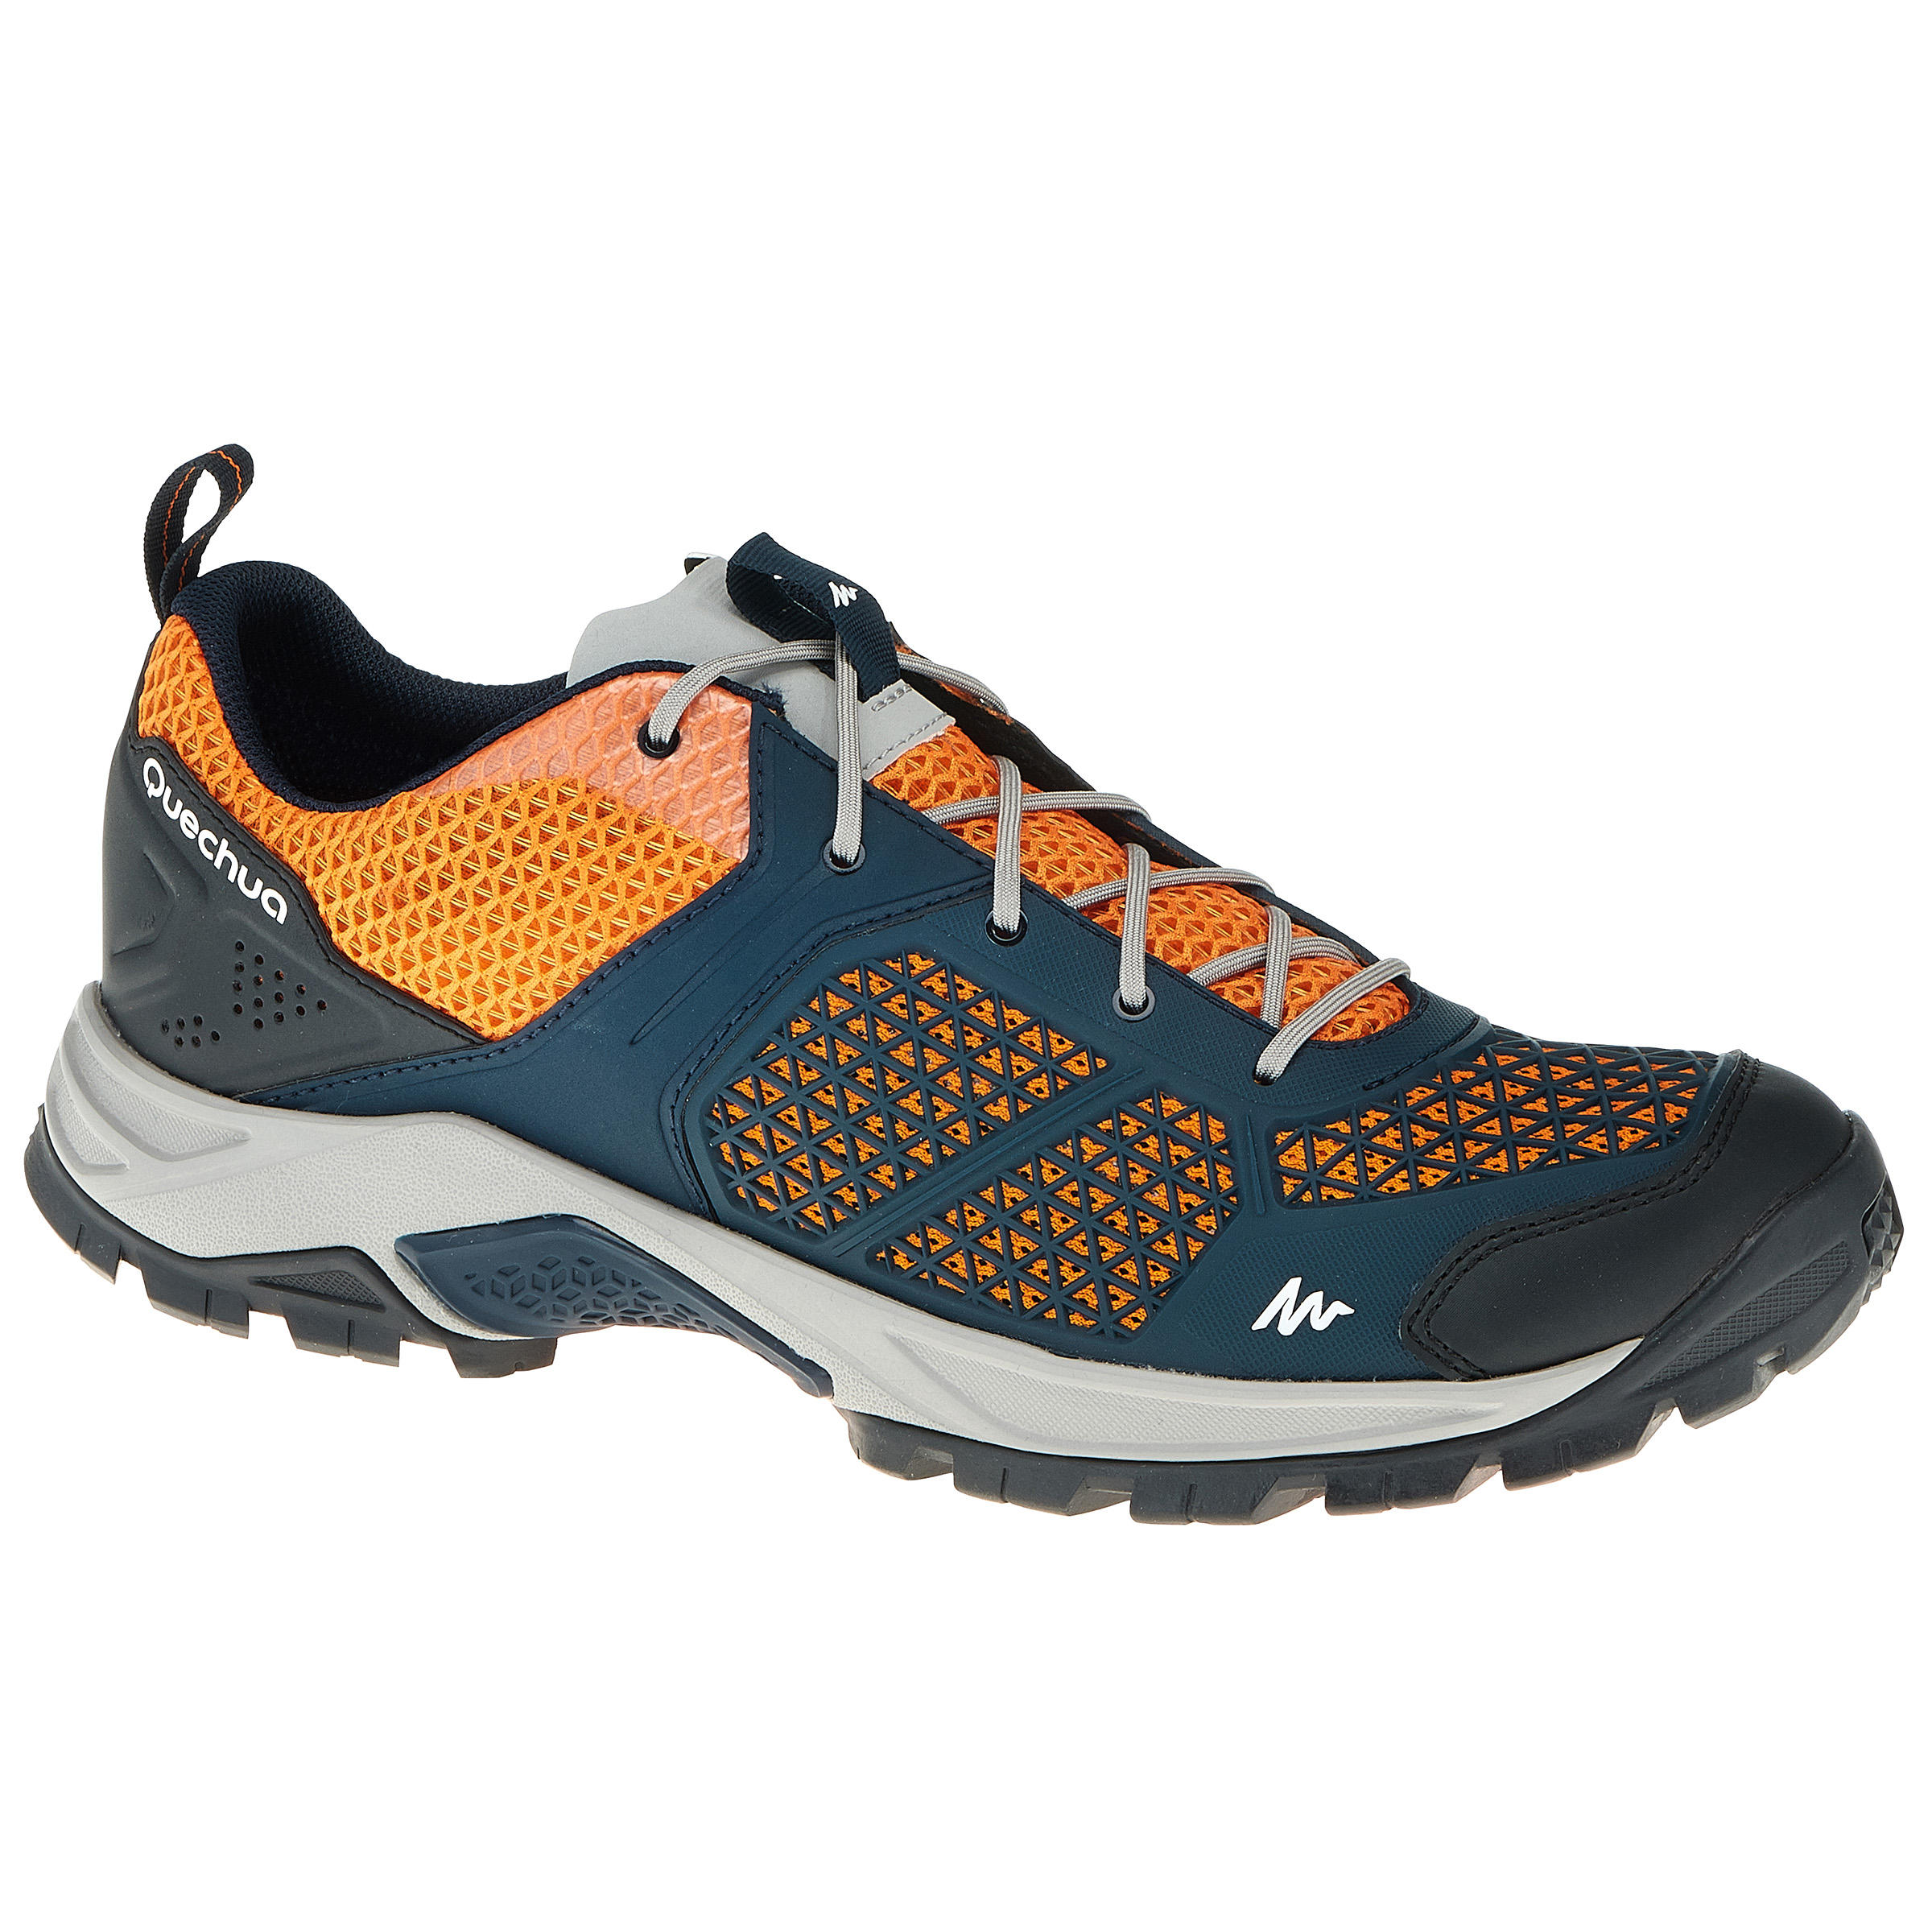 QUECHUA Forclaz 500 Fresh Men's Hiking leather shoes dark blue/orange